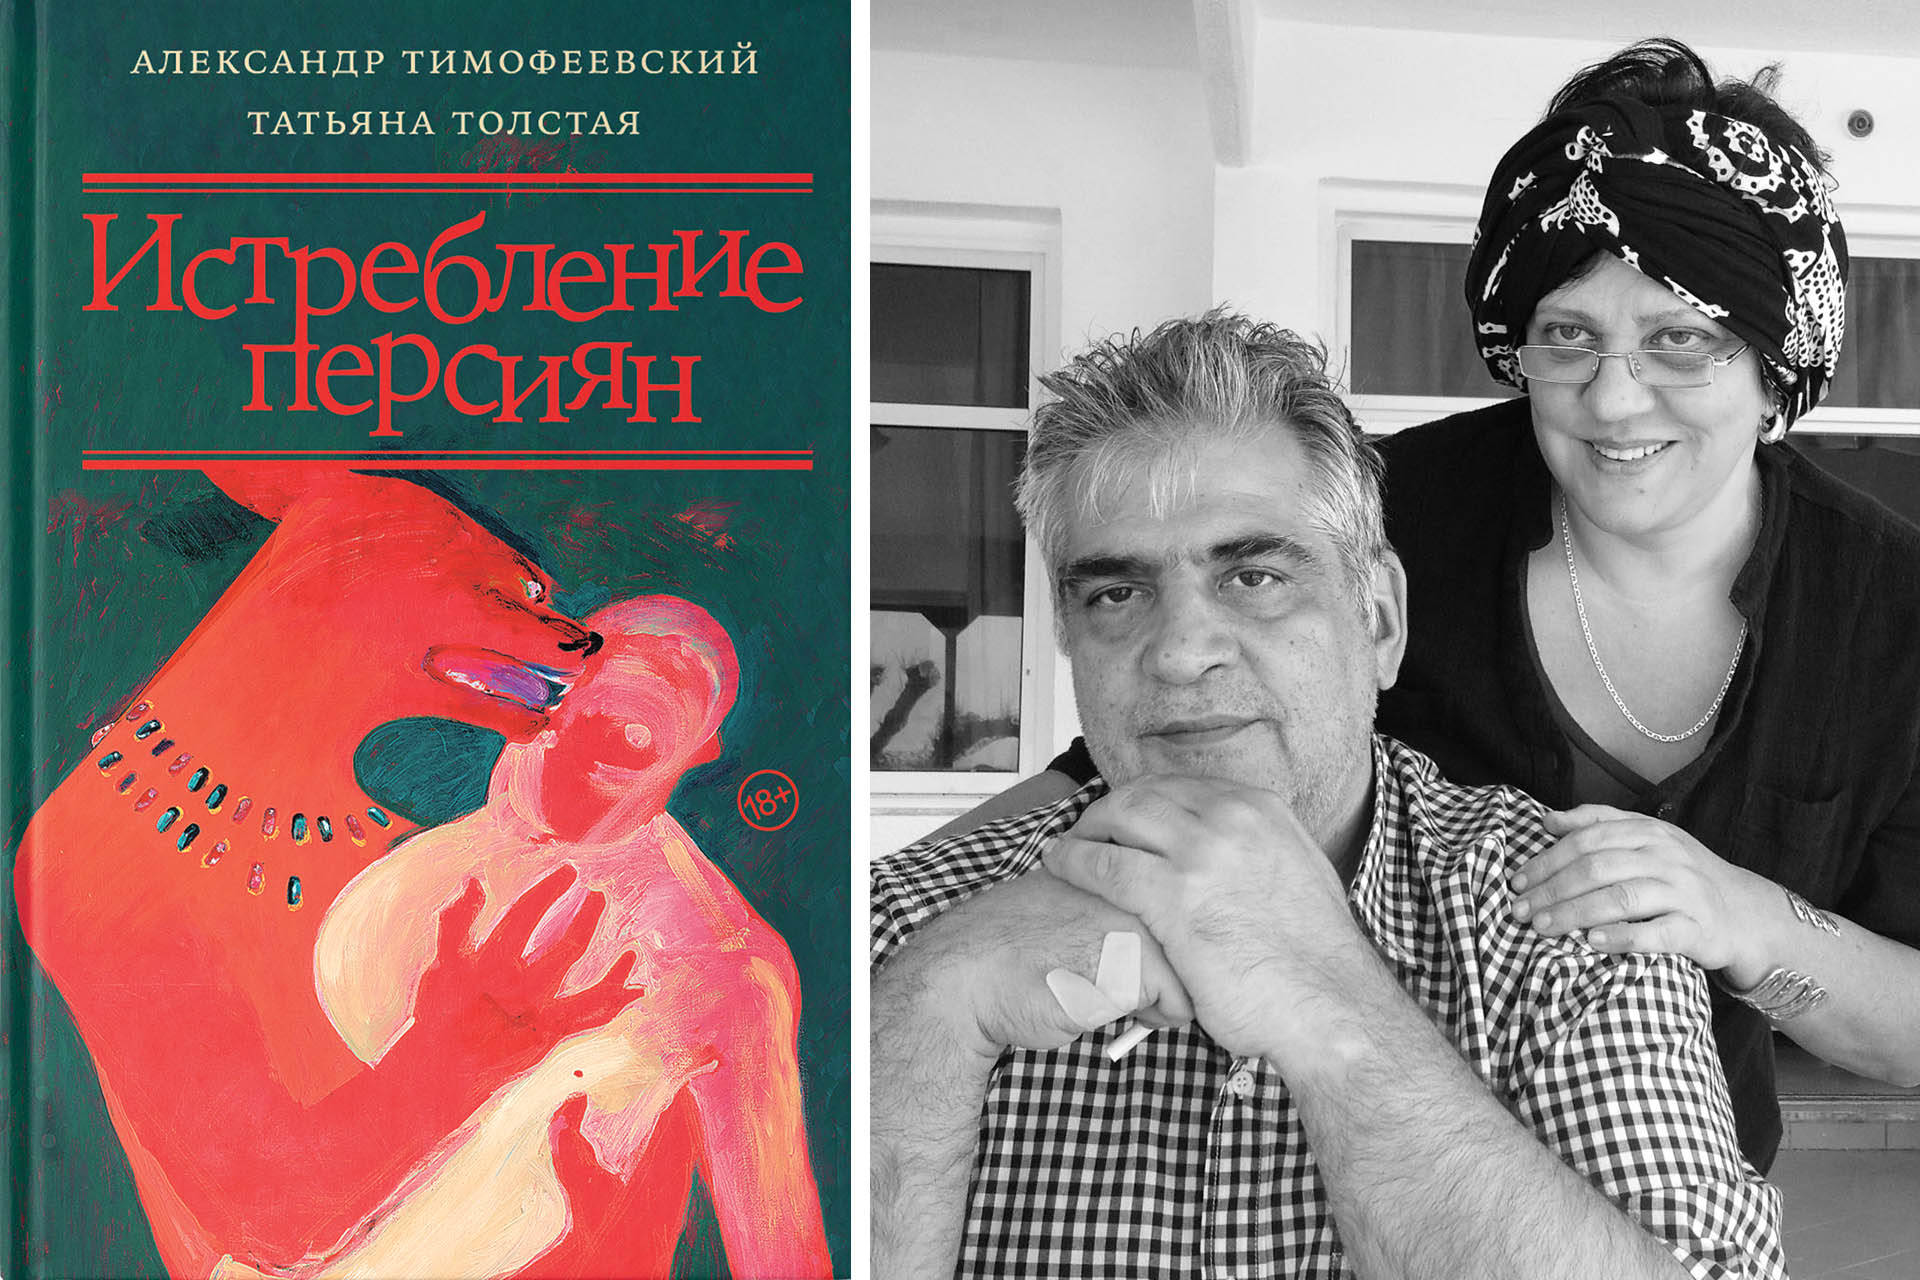 Слева: обложка книги, справа: Татьяна Толстая и Александр Тимофеевский. Крит, 2013 год